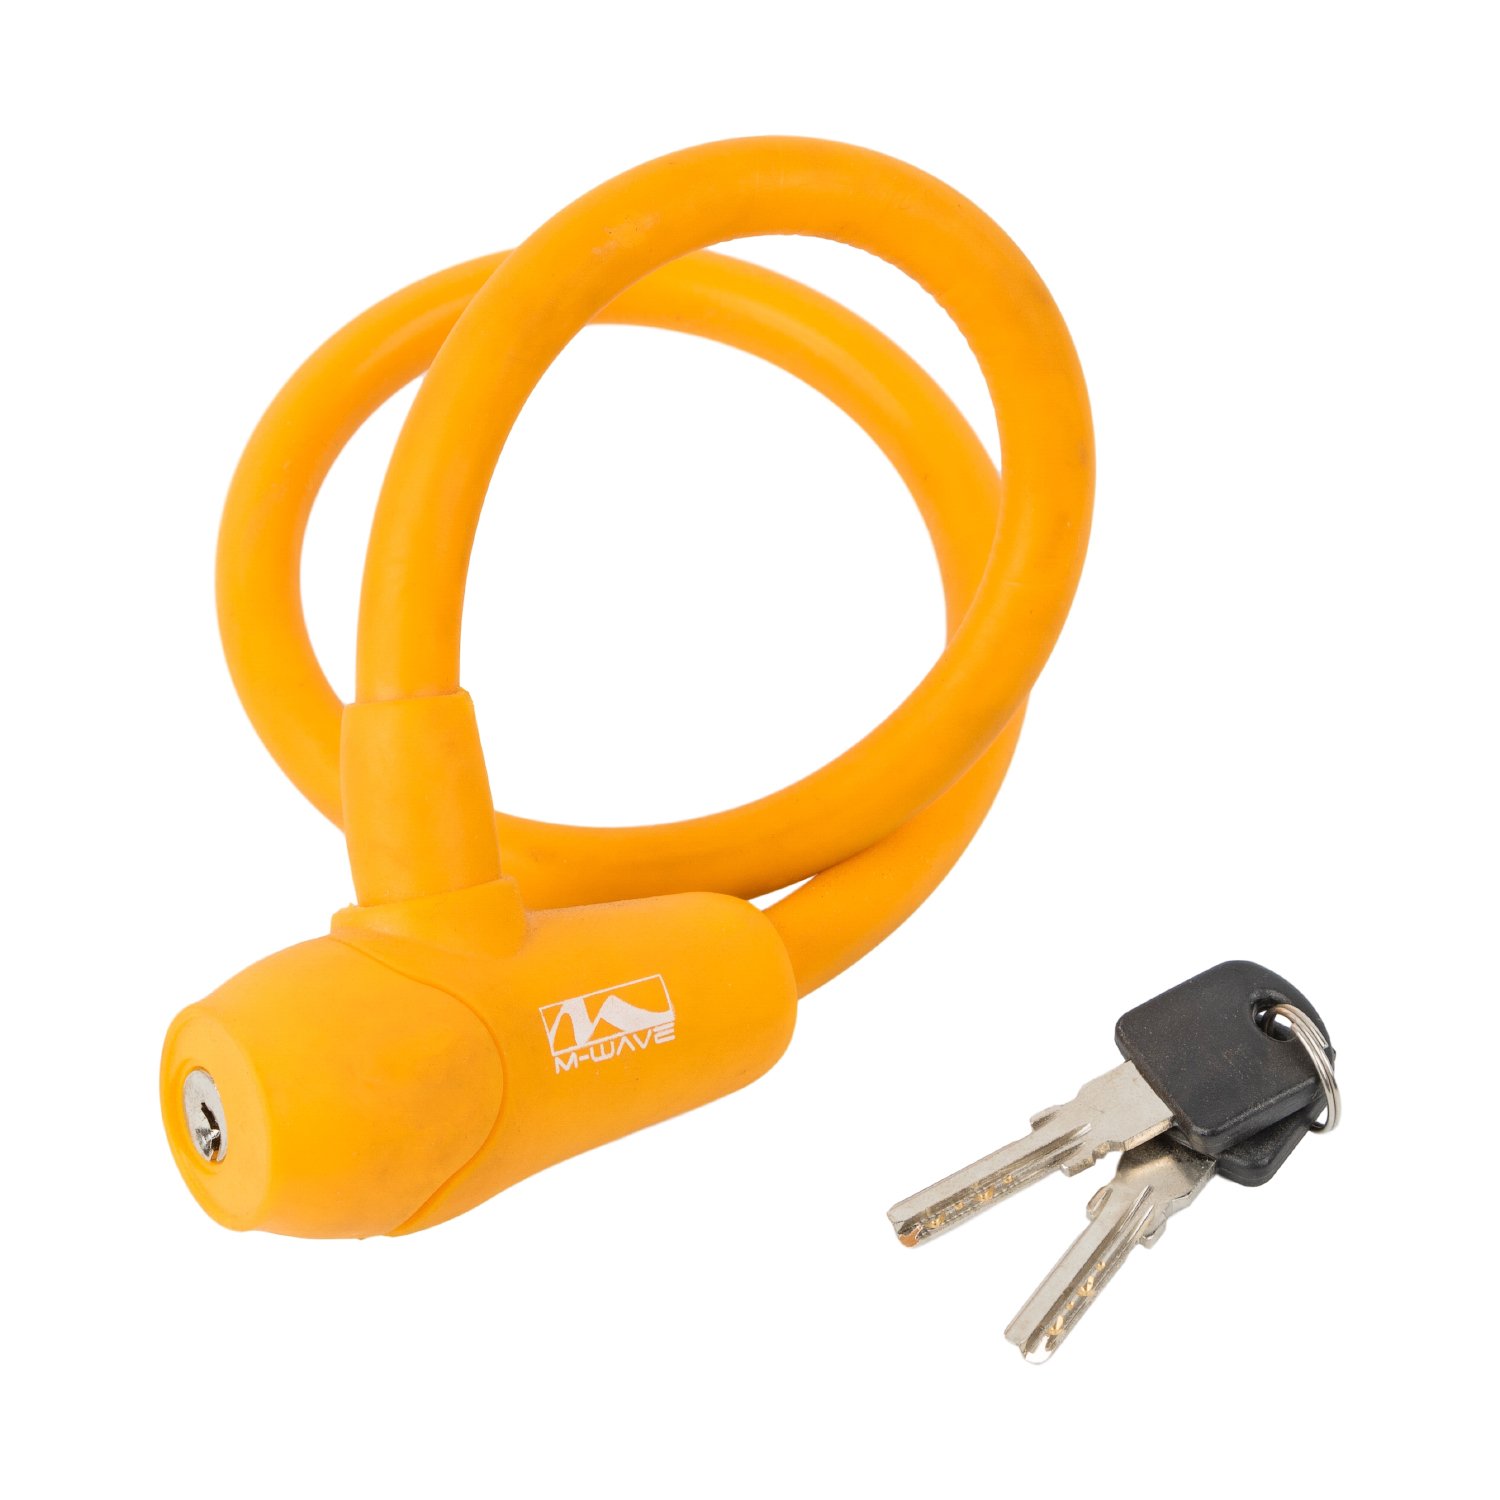 Велосипедный замок M-WAVE, тросовый, на ключ, 12 х 600 мм, оранжевый, 5-231047 велосипедный замок m wave тросовый на ключ 12 х 600 мм оранжевый 5 231047